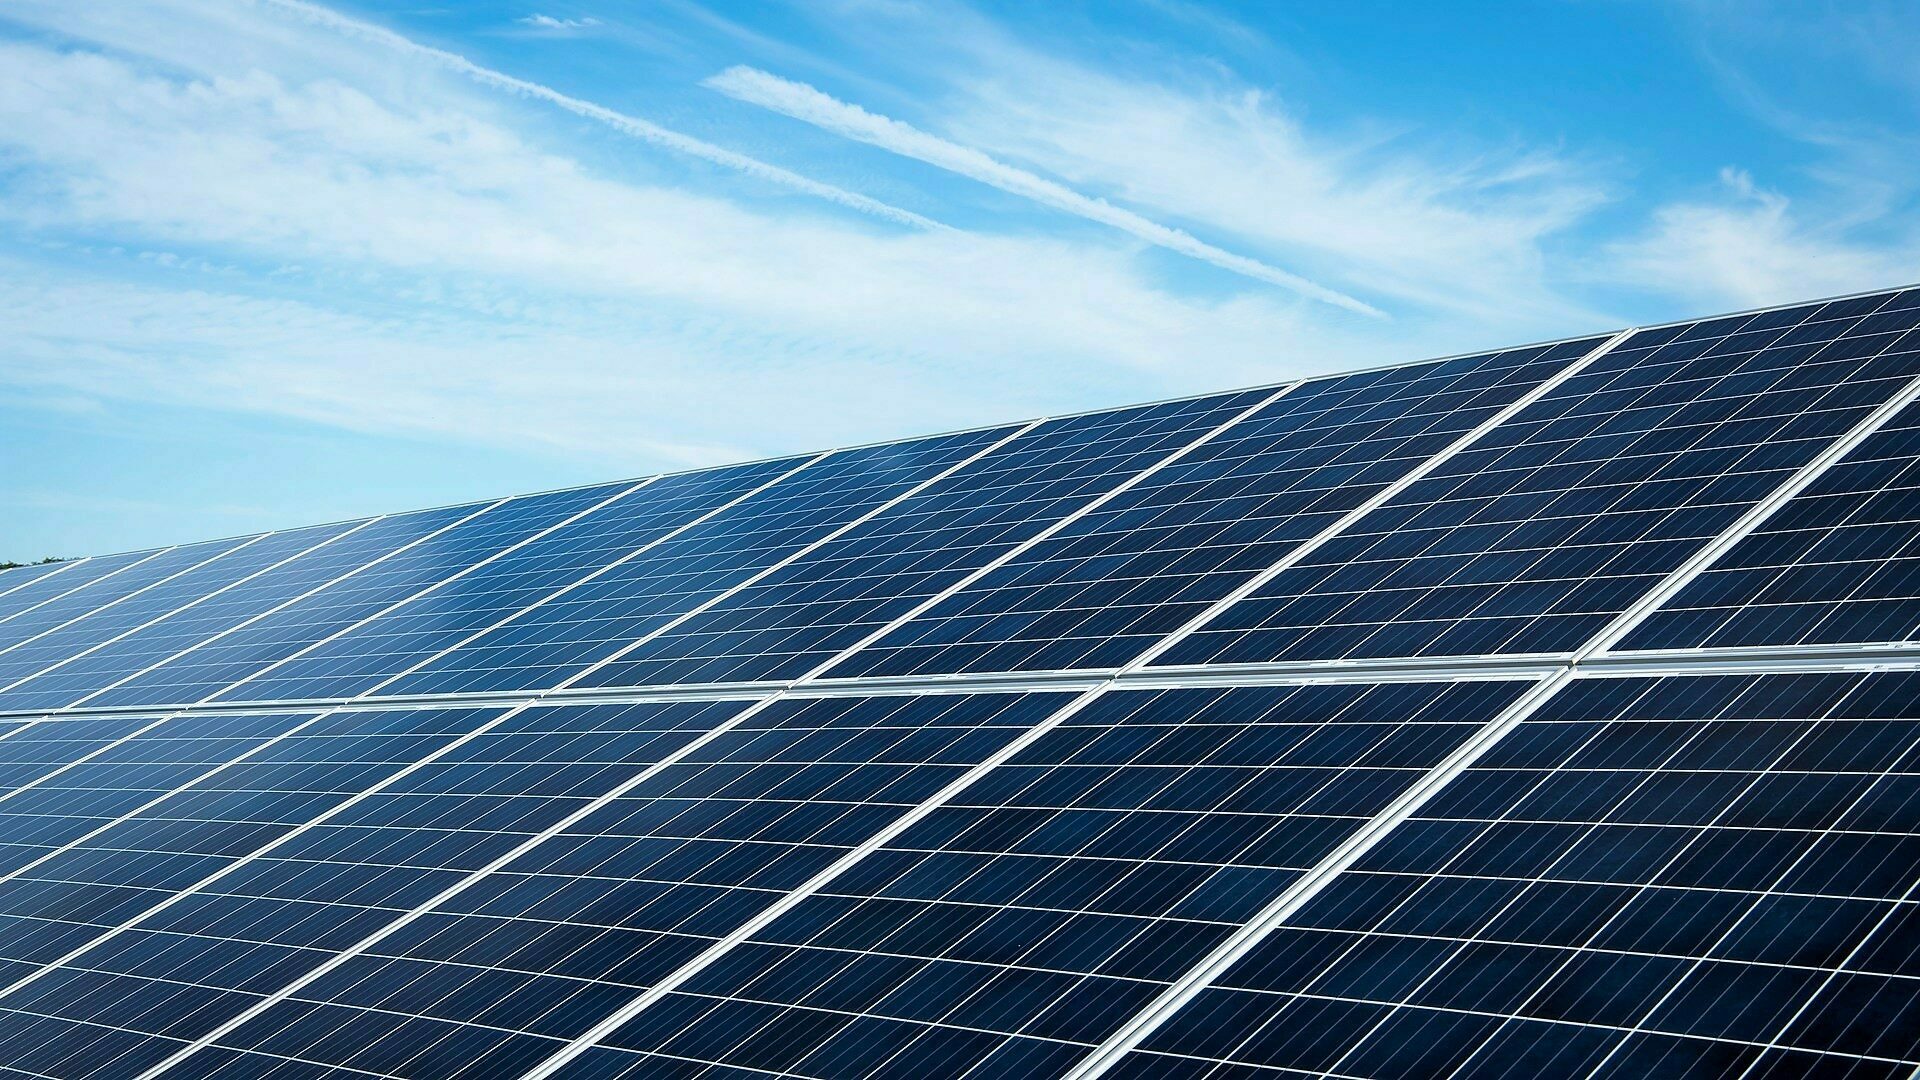 Dhamma Energy, filiale d’Eni, achève la construction d’un parc solaire de 87,5 MWp en France